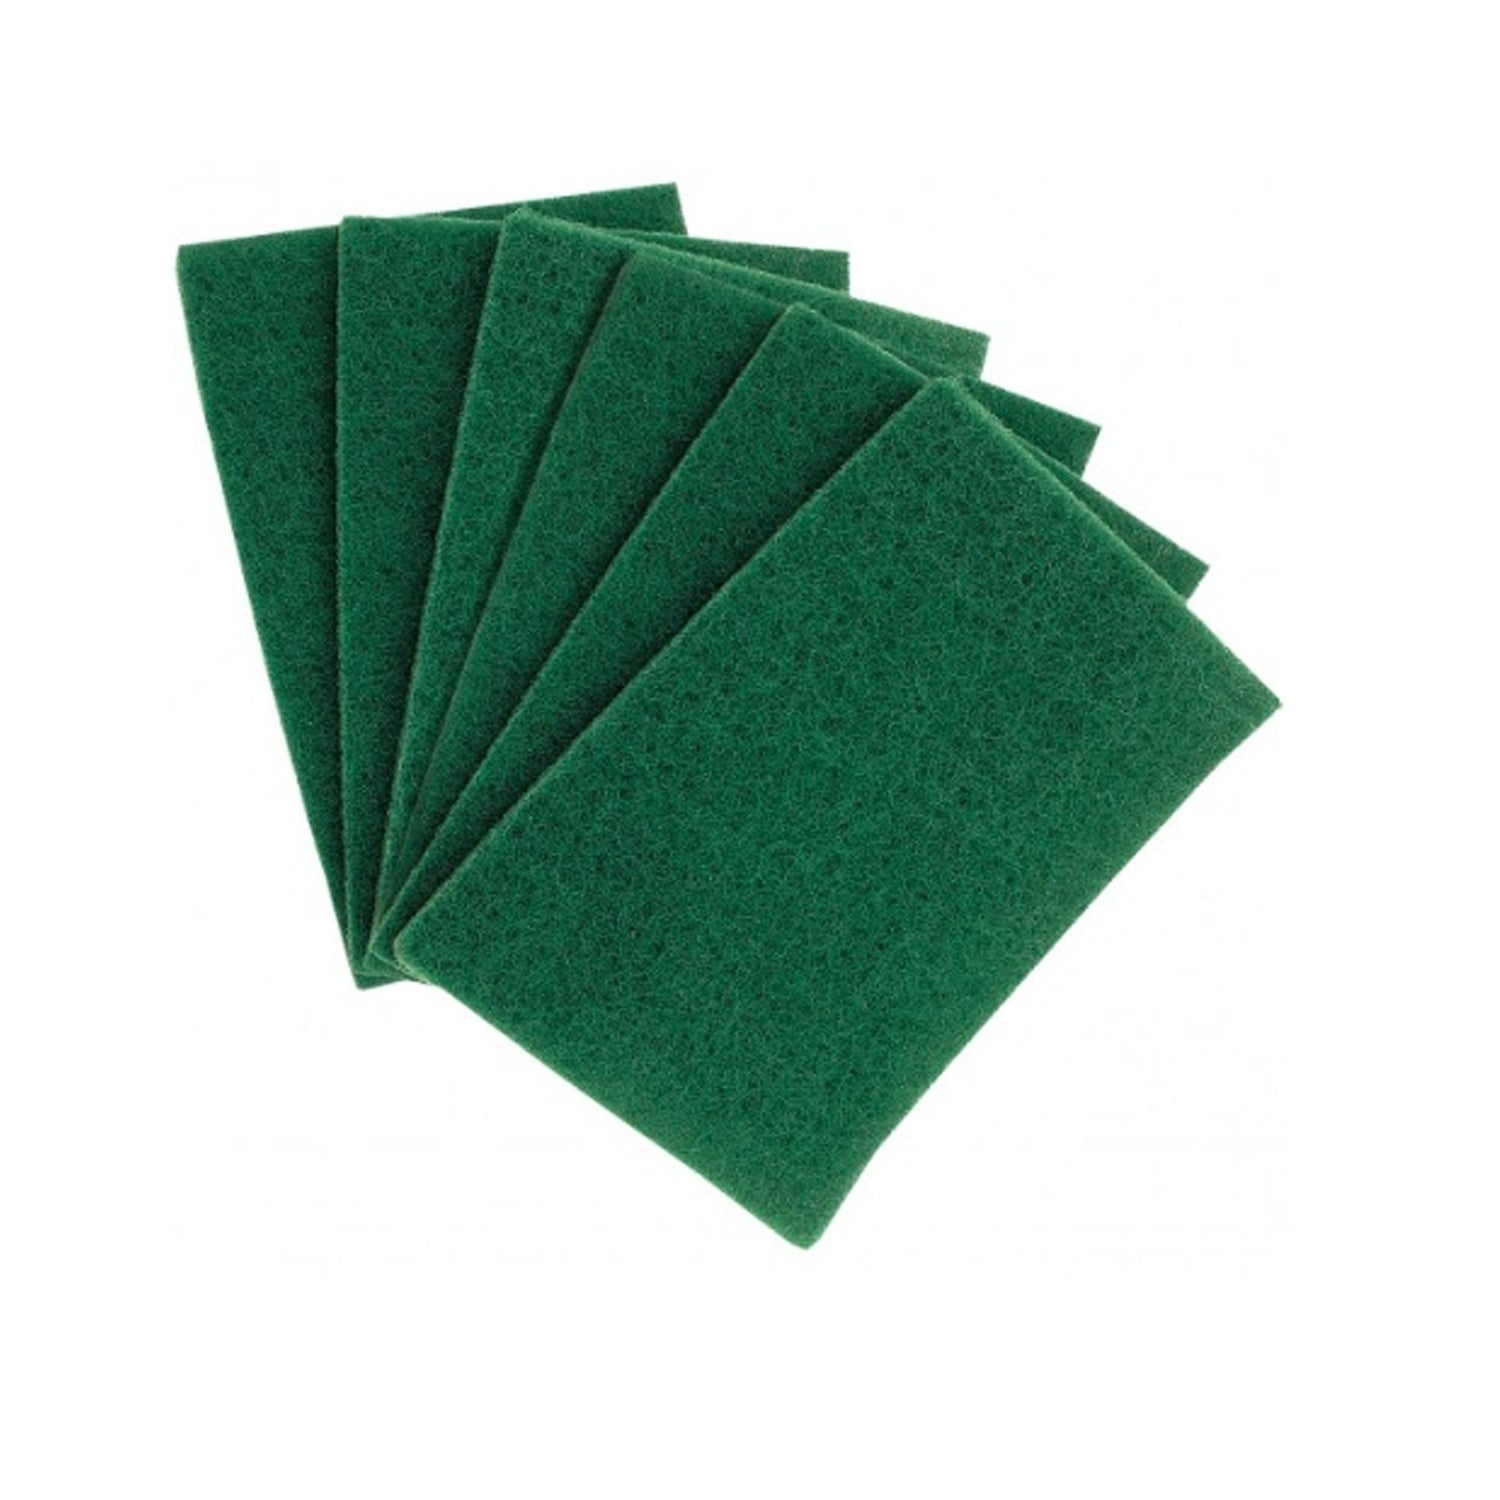 green-scuff-pad-scrubbers-10-pack